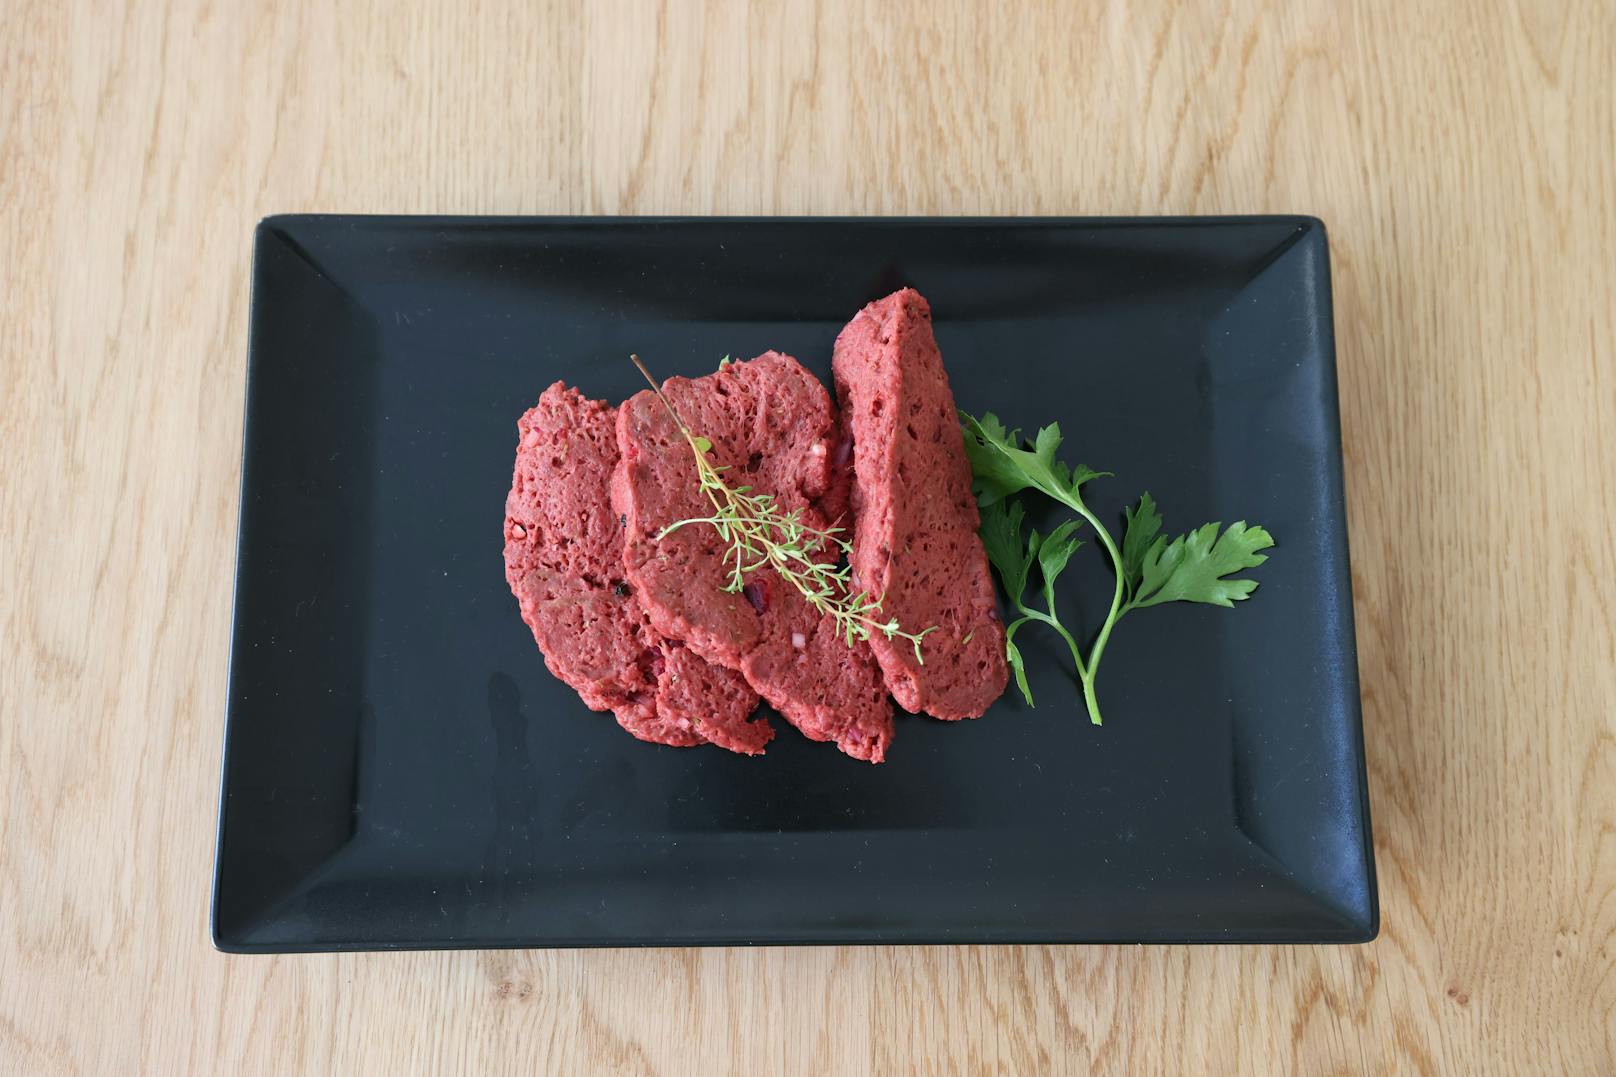 Das vegane Steak besteht aus Weizenprotein, Kichererbsen, Pilzen hergestellt und roten Rüben für die Farbe.